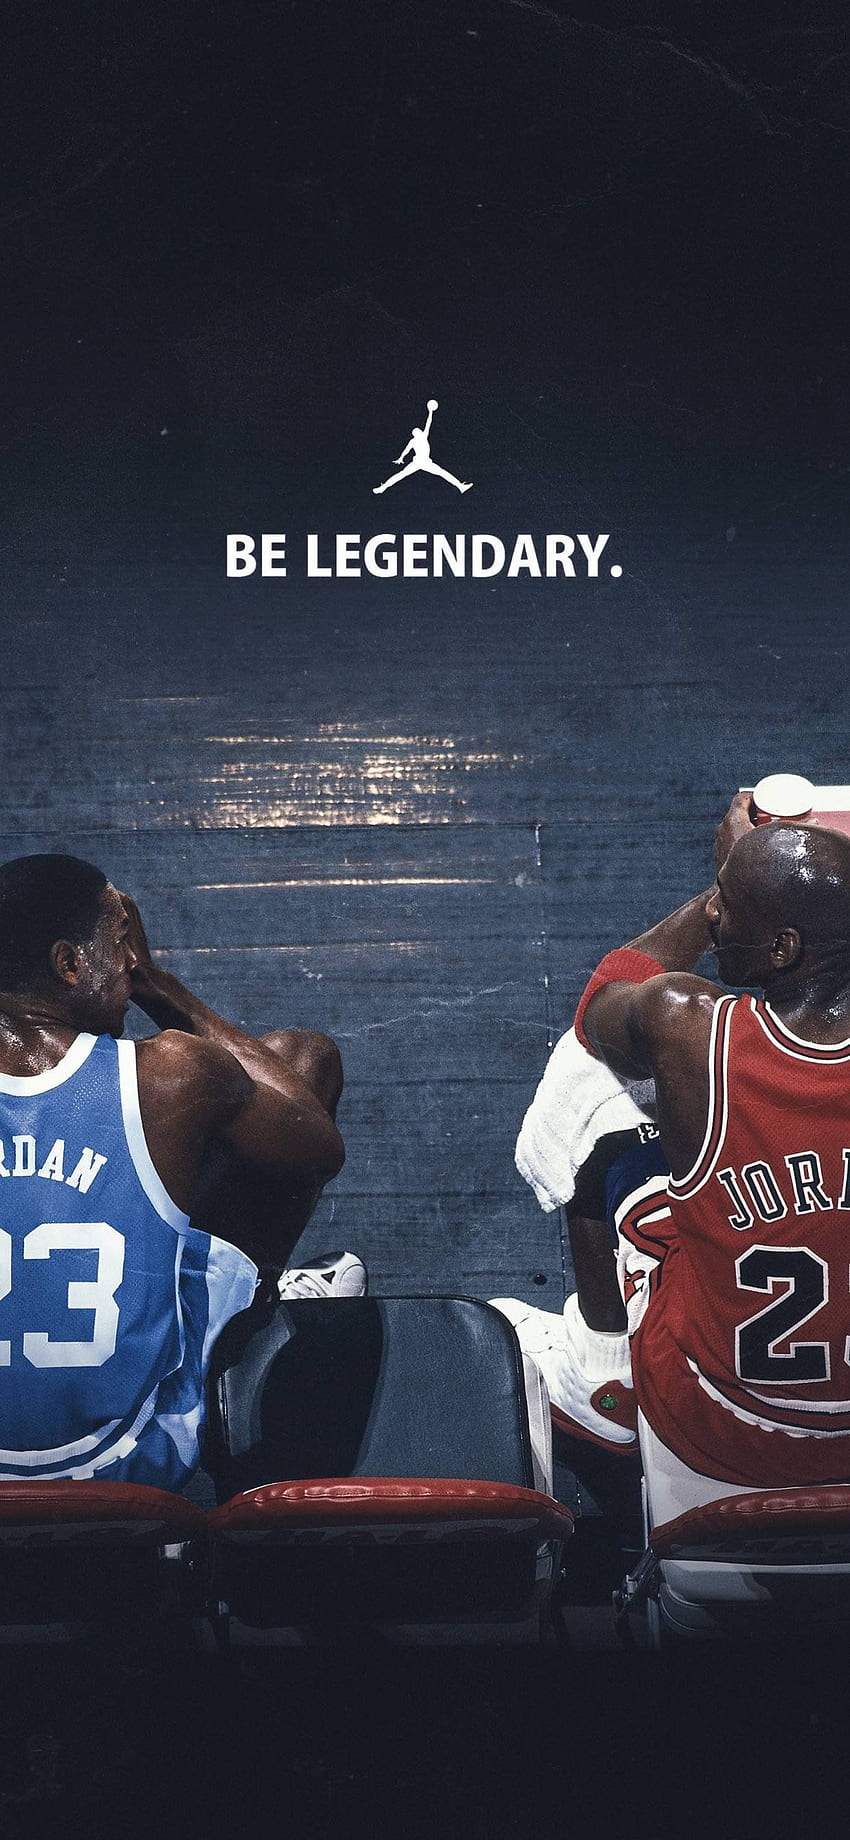 Nike Air Jordan Logo - Fondos De Pantalla Jordan - & Background HD wallpaper  | Pxfuel